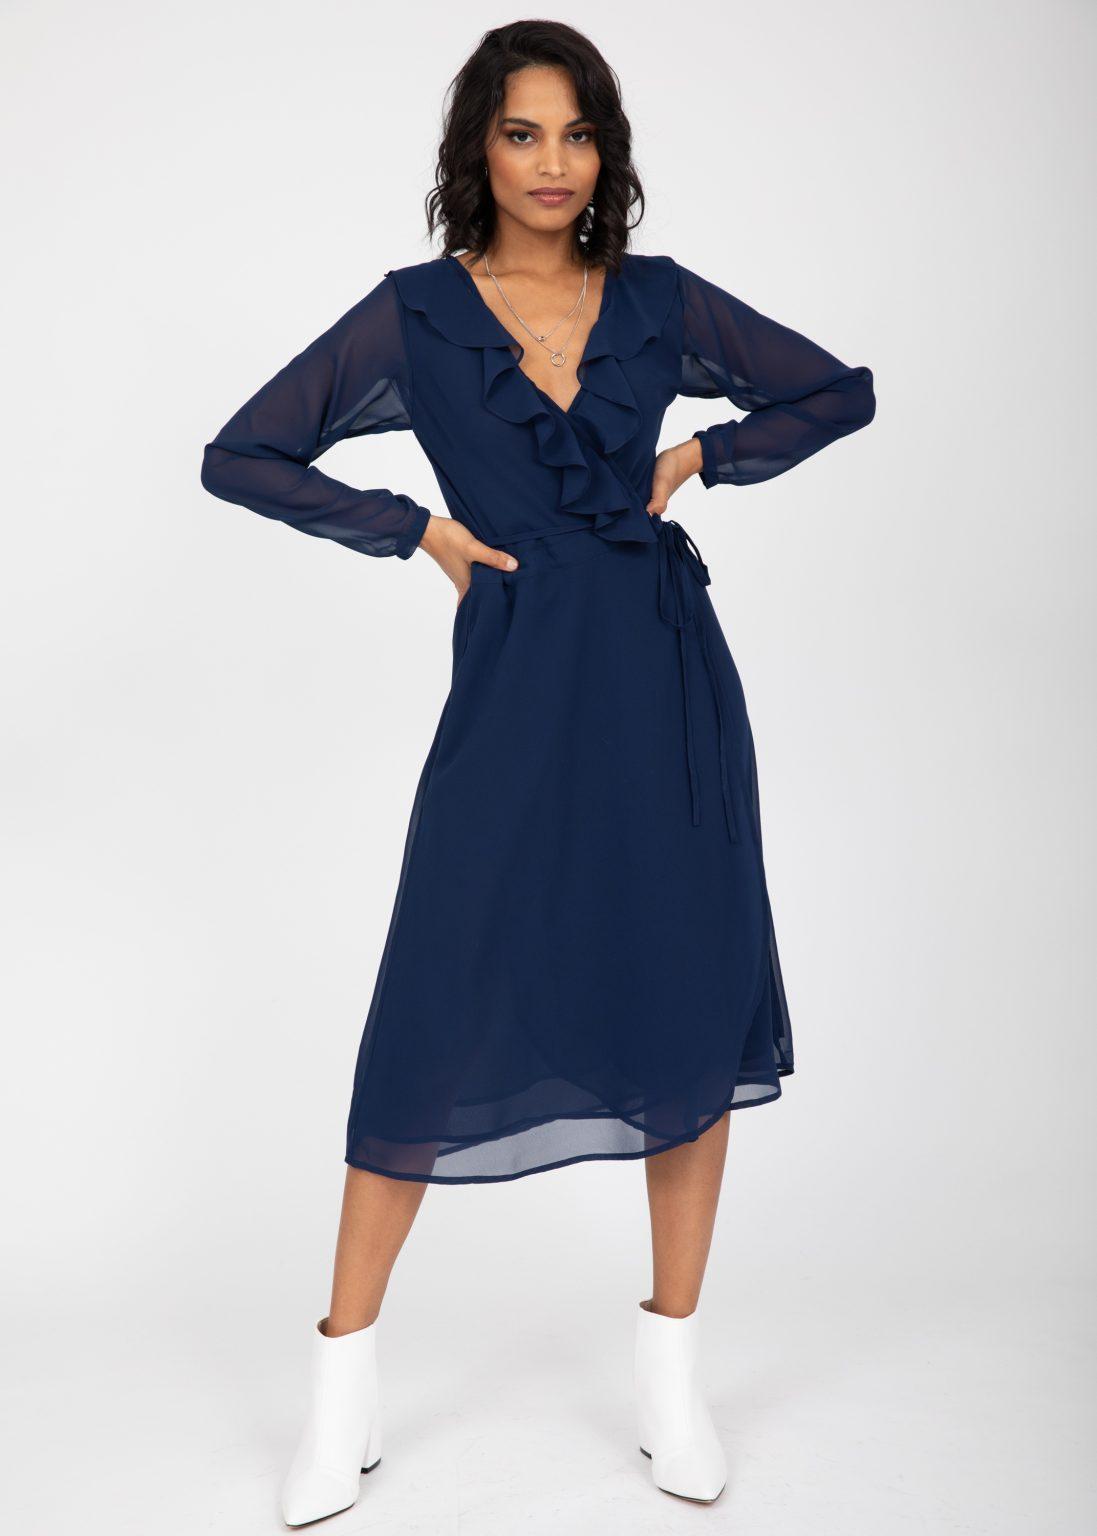 Navy Blue Sheer Midi Wrap Dress With Long Sleeves Likemary 5995